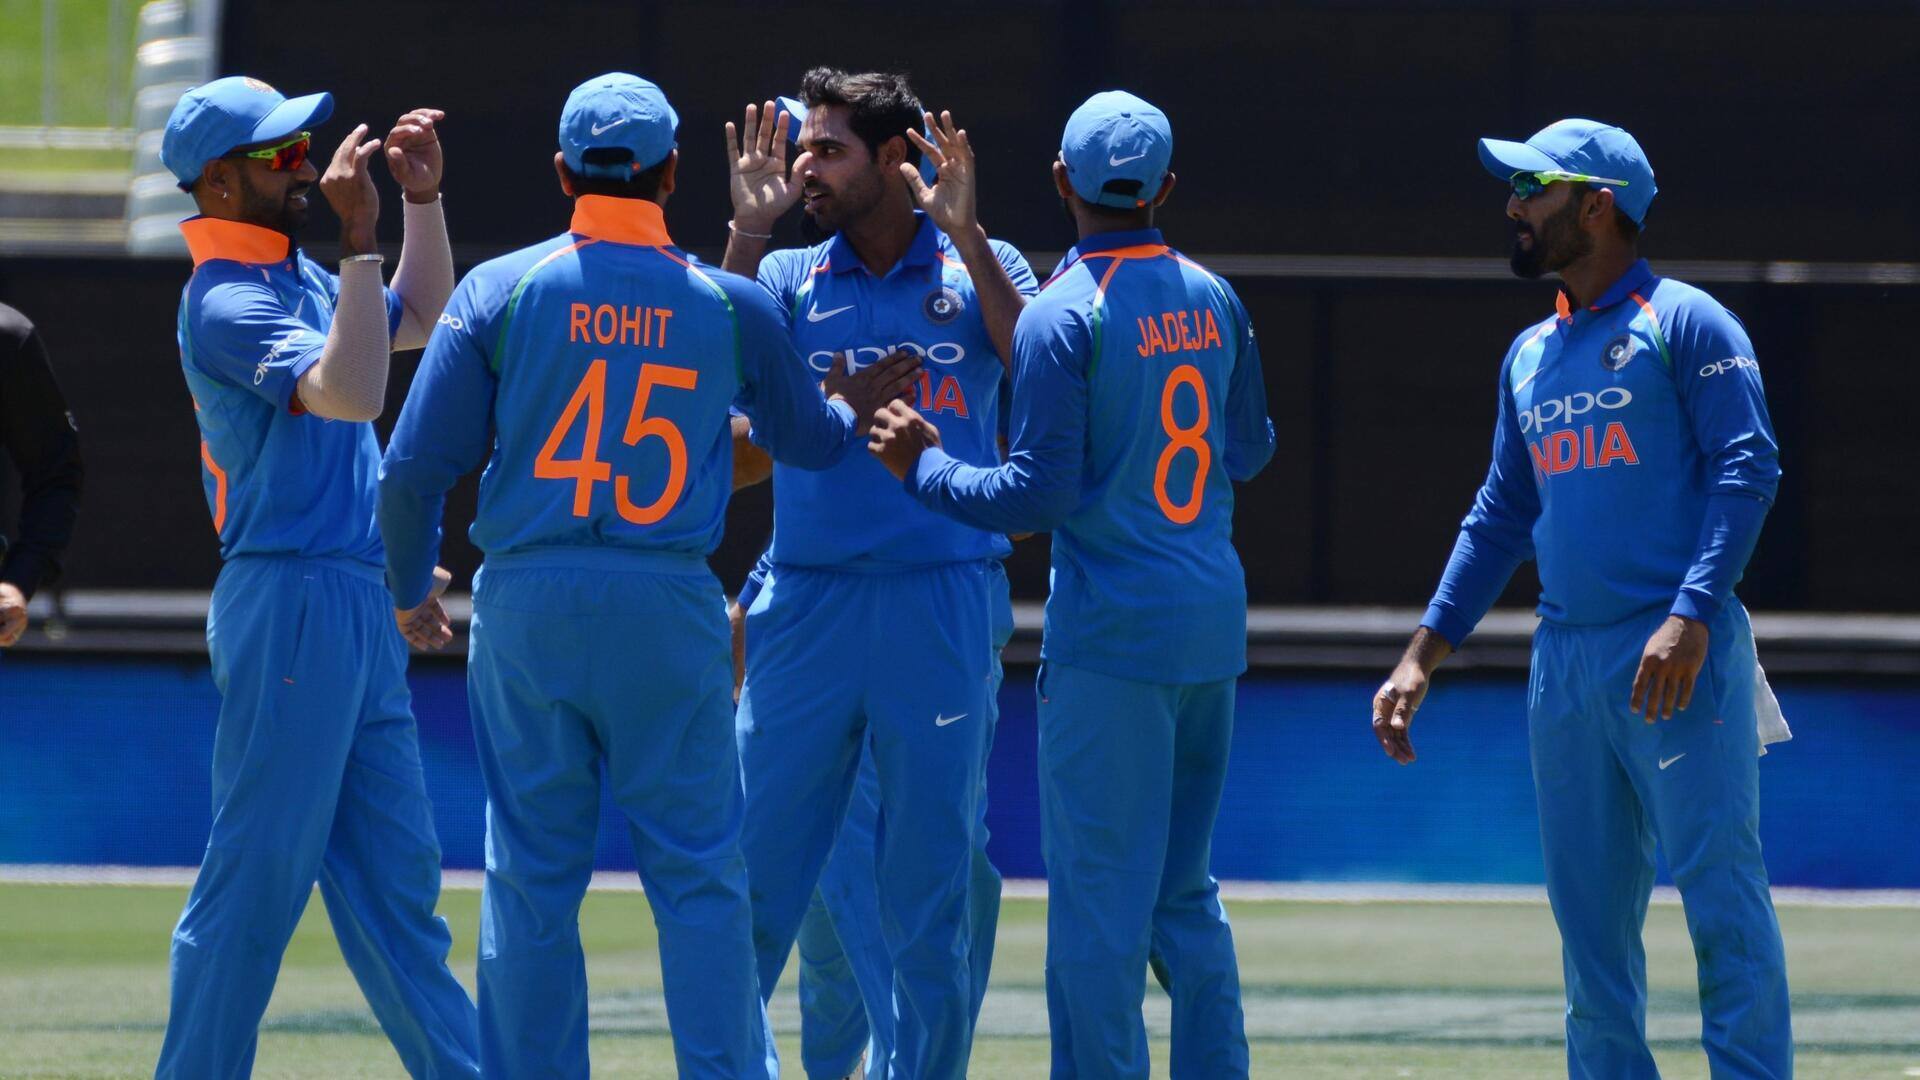 वेस्टइंडीज में कैसा रहा है भारतीय वनडे टीम का प्रदर्शन? जानिए आंकड़े 